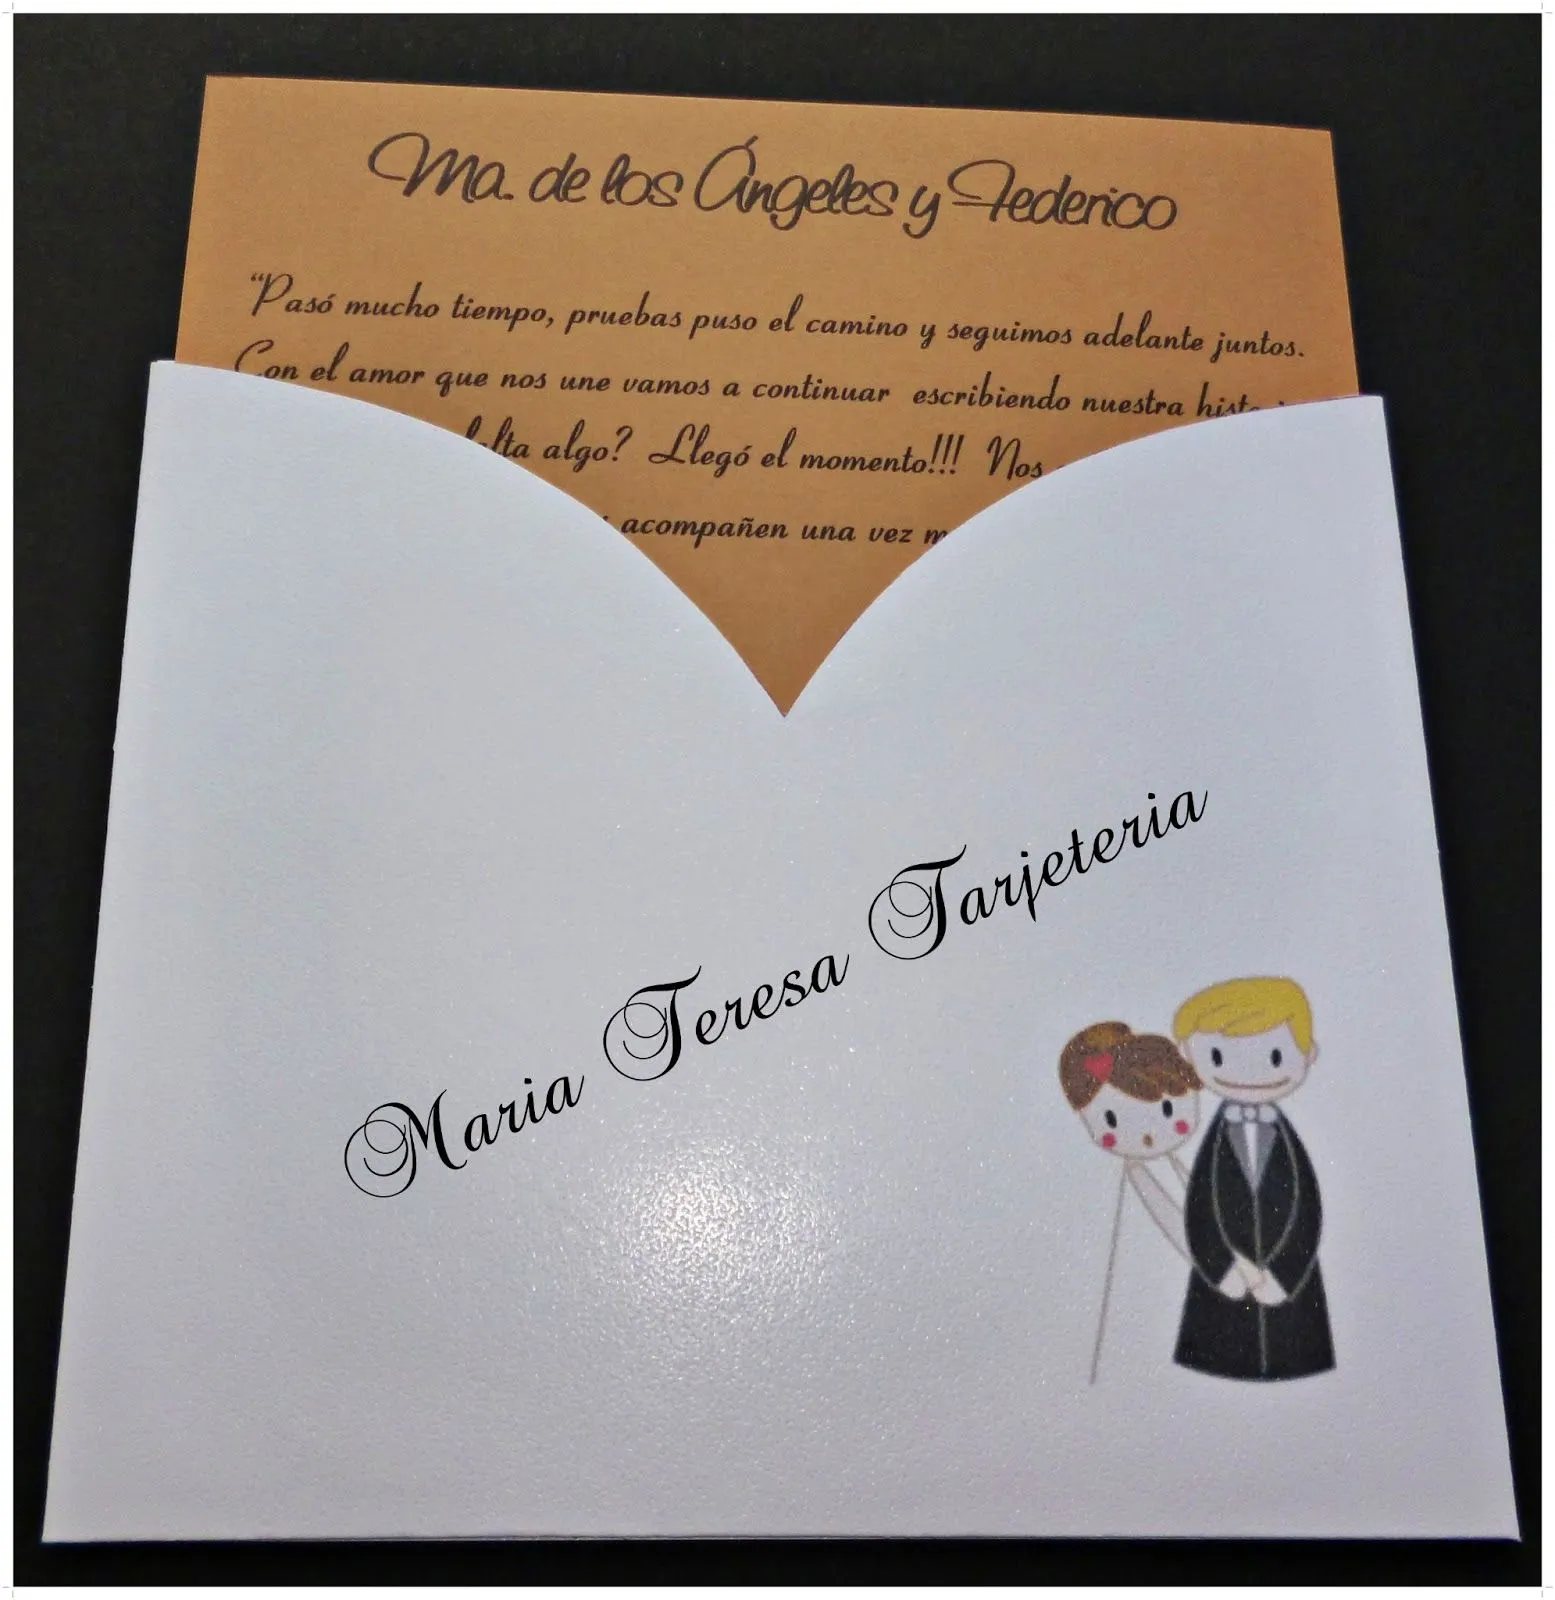 Imagenes de tarjetas de invitación para una boda - Imagui